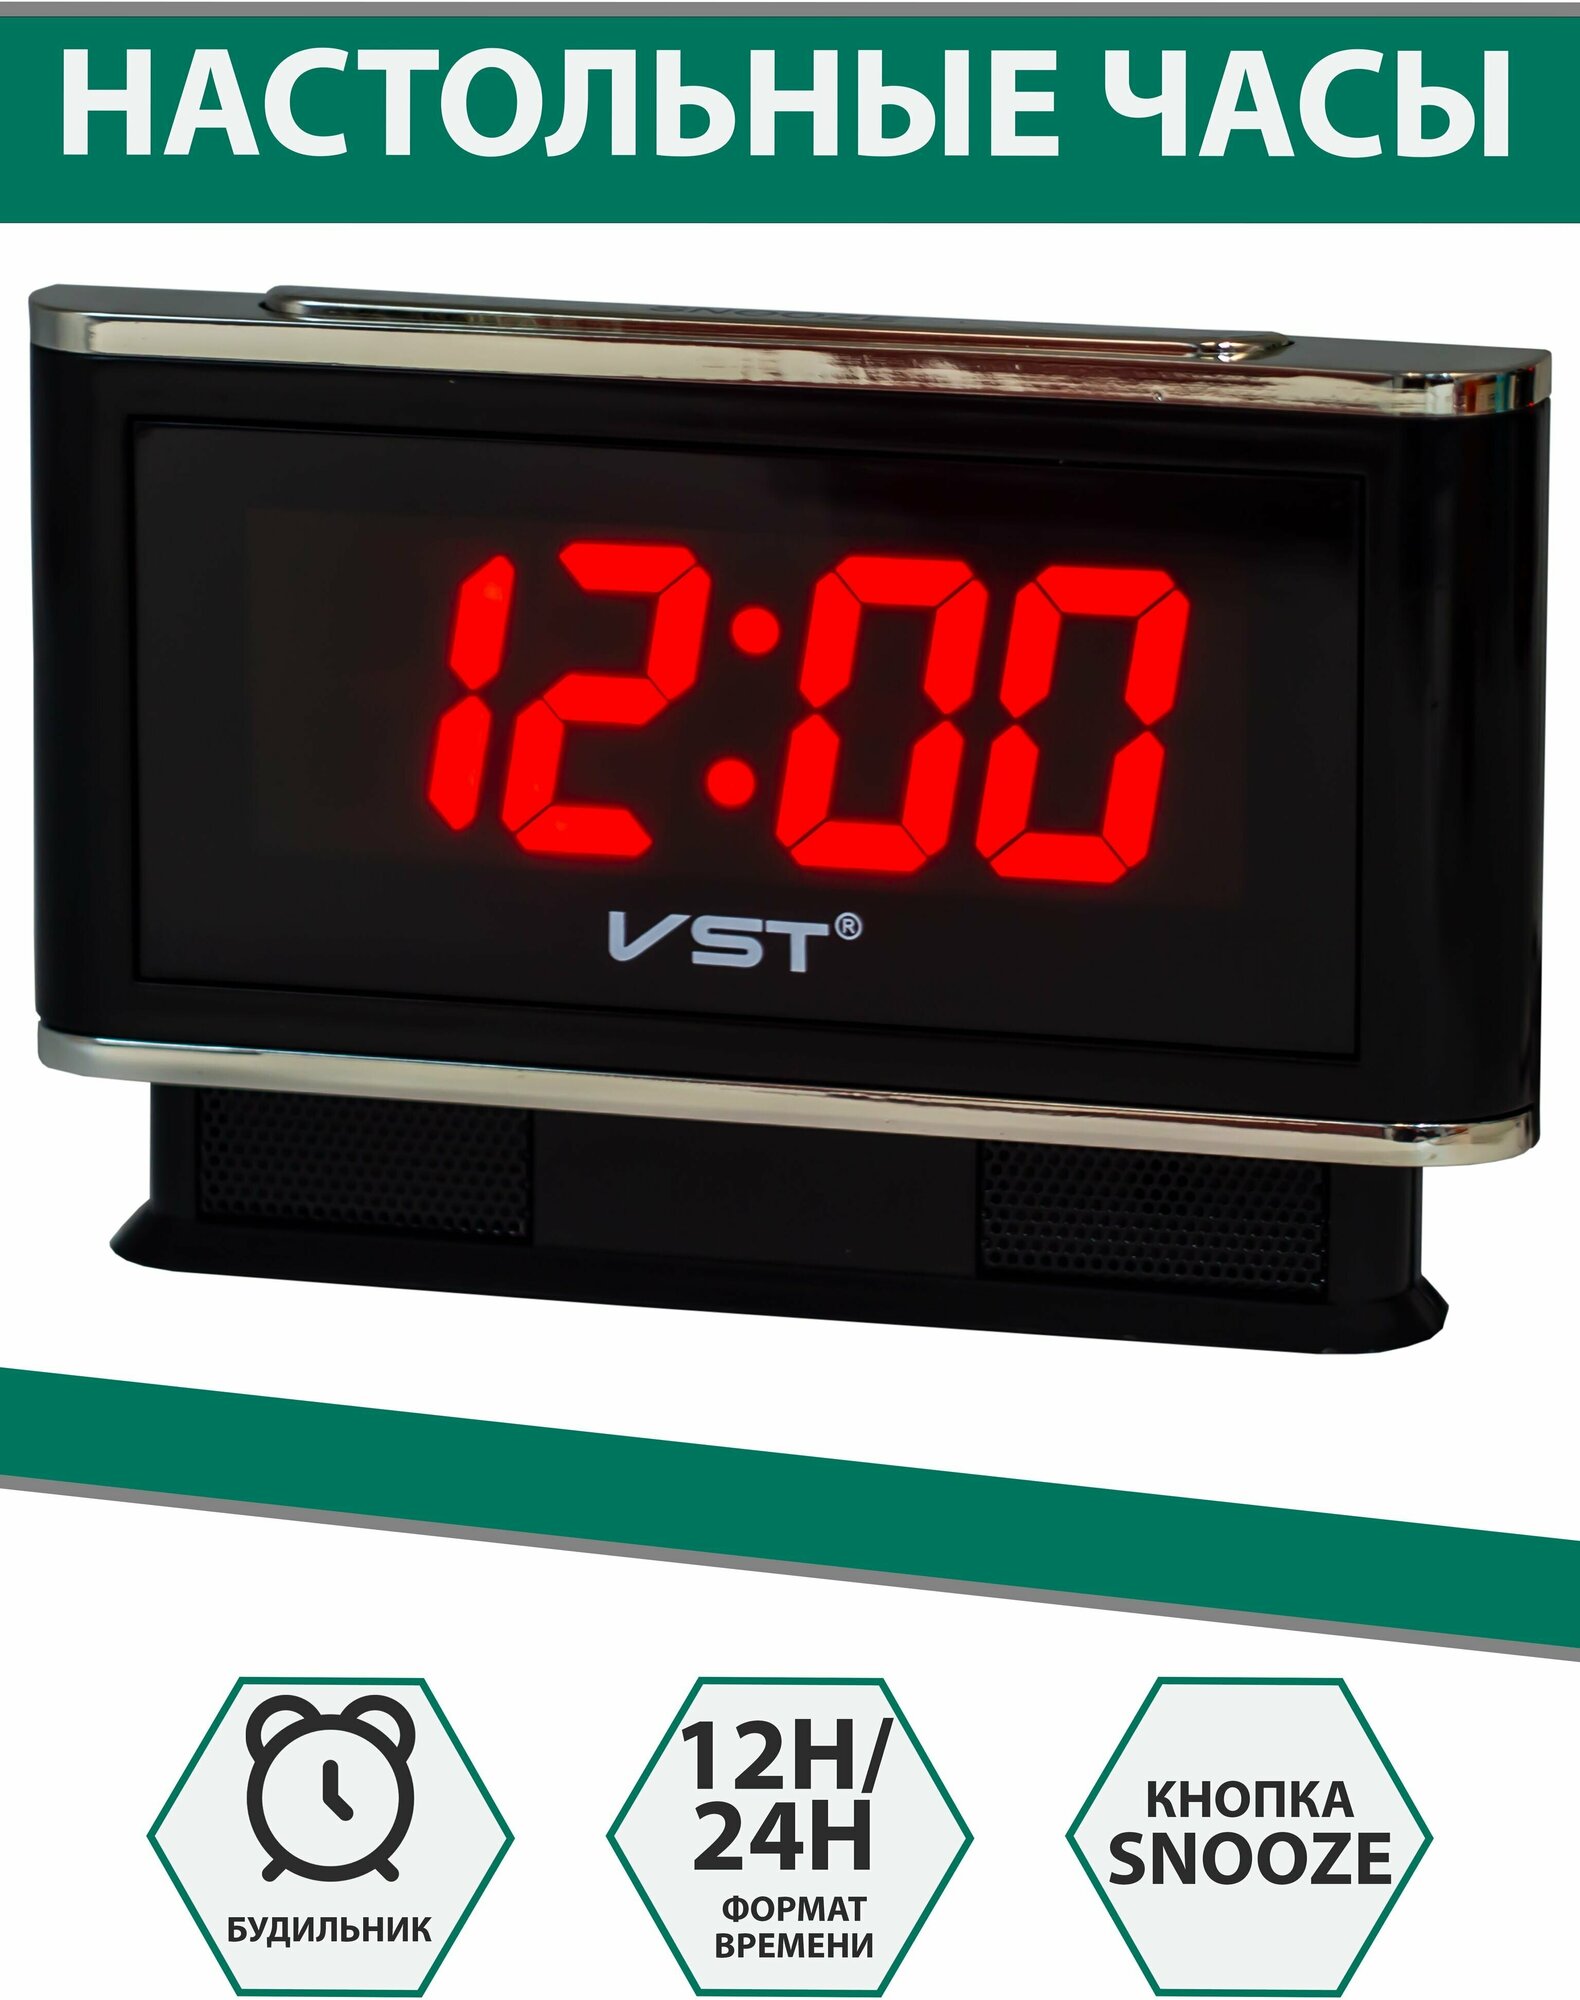 Настольные часы-будильник VST721 красные цифры